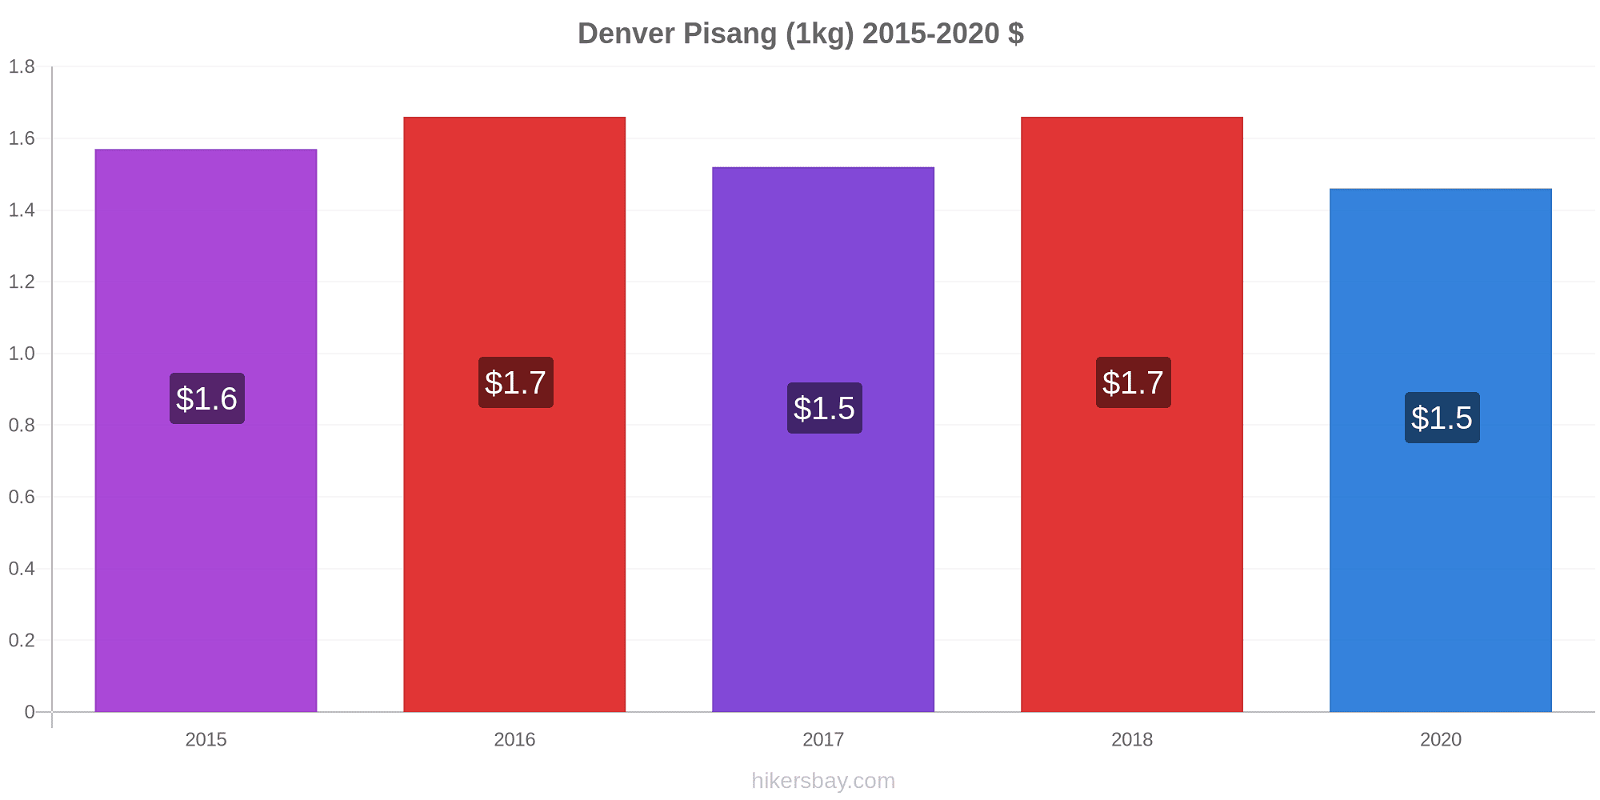 Denver perubahan harga Pisang (1kg) hikersbay.com